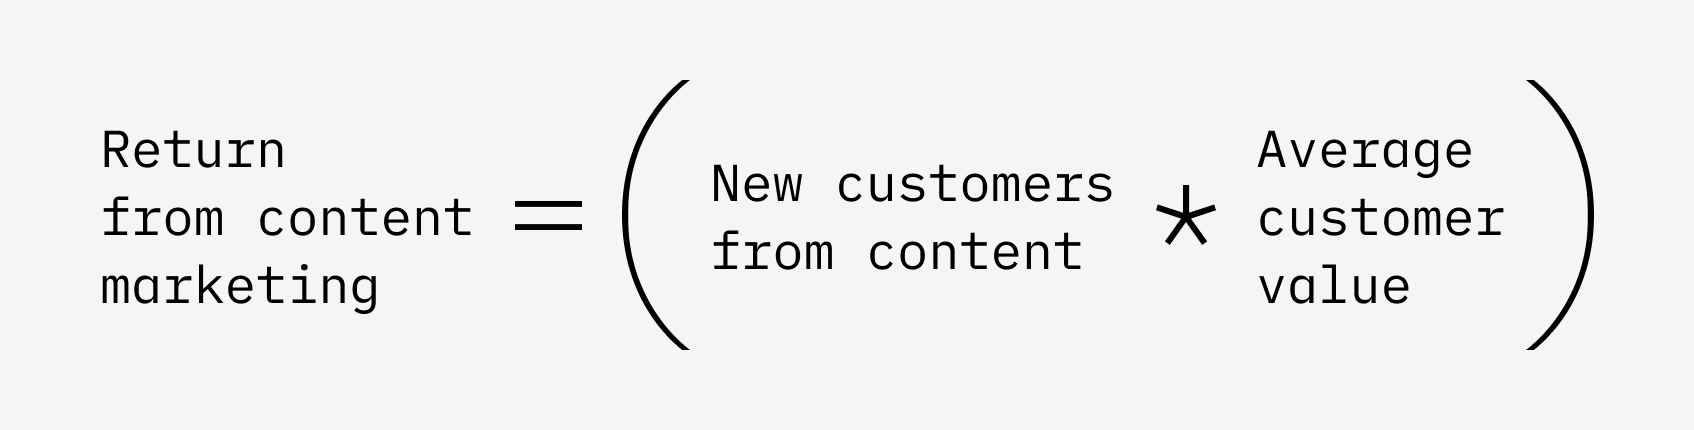 Retorno del marketing de contenidos = (Nuevos clientes del contenido * ACV)